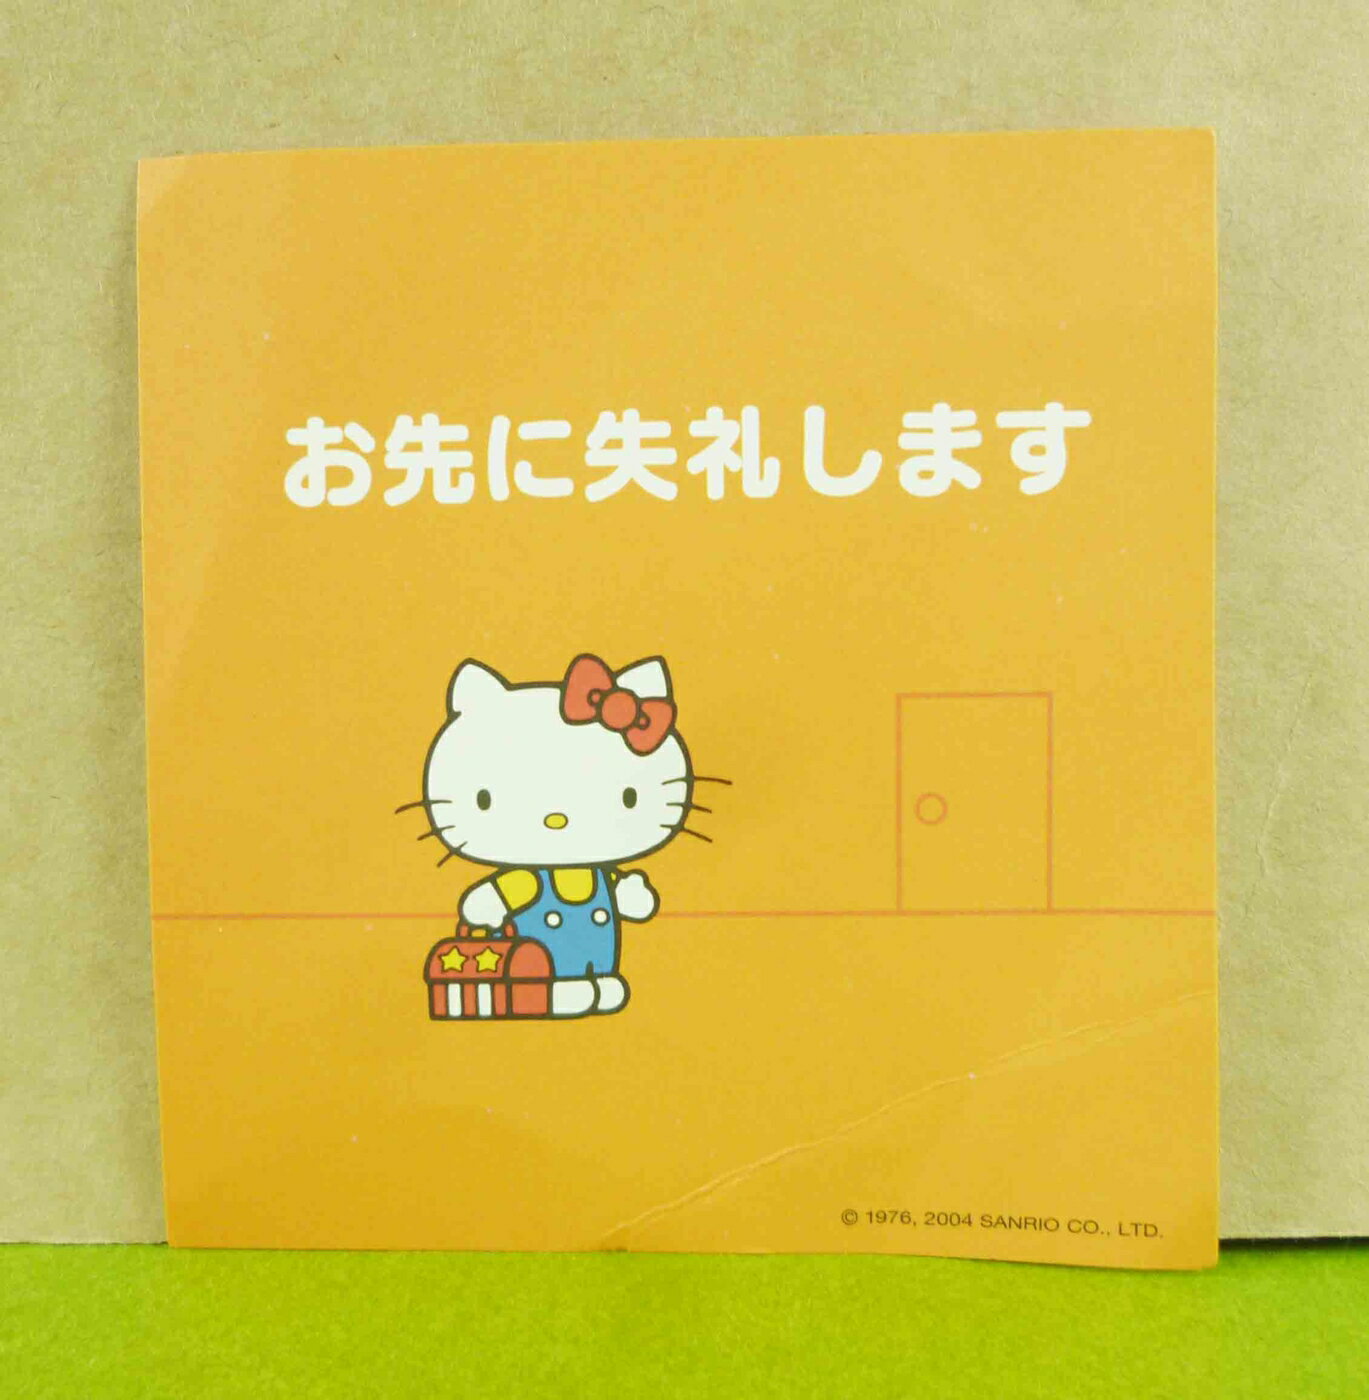 【震撼精品百貨】Hello Kitty 凱蒂貓 造型卡片-橘送禮 震撼日式精品百貨